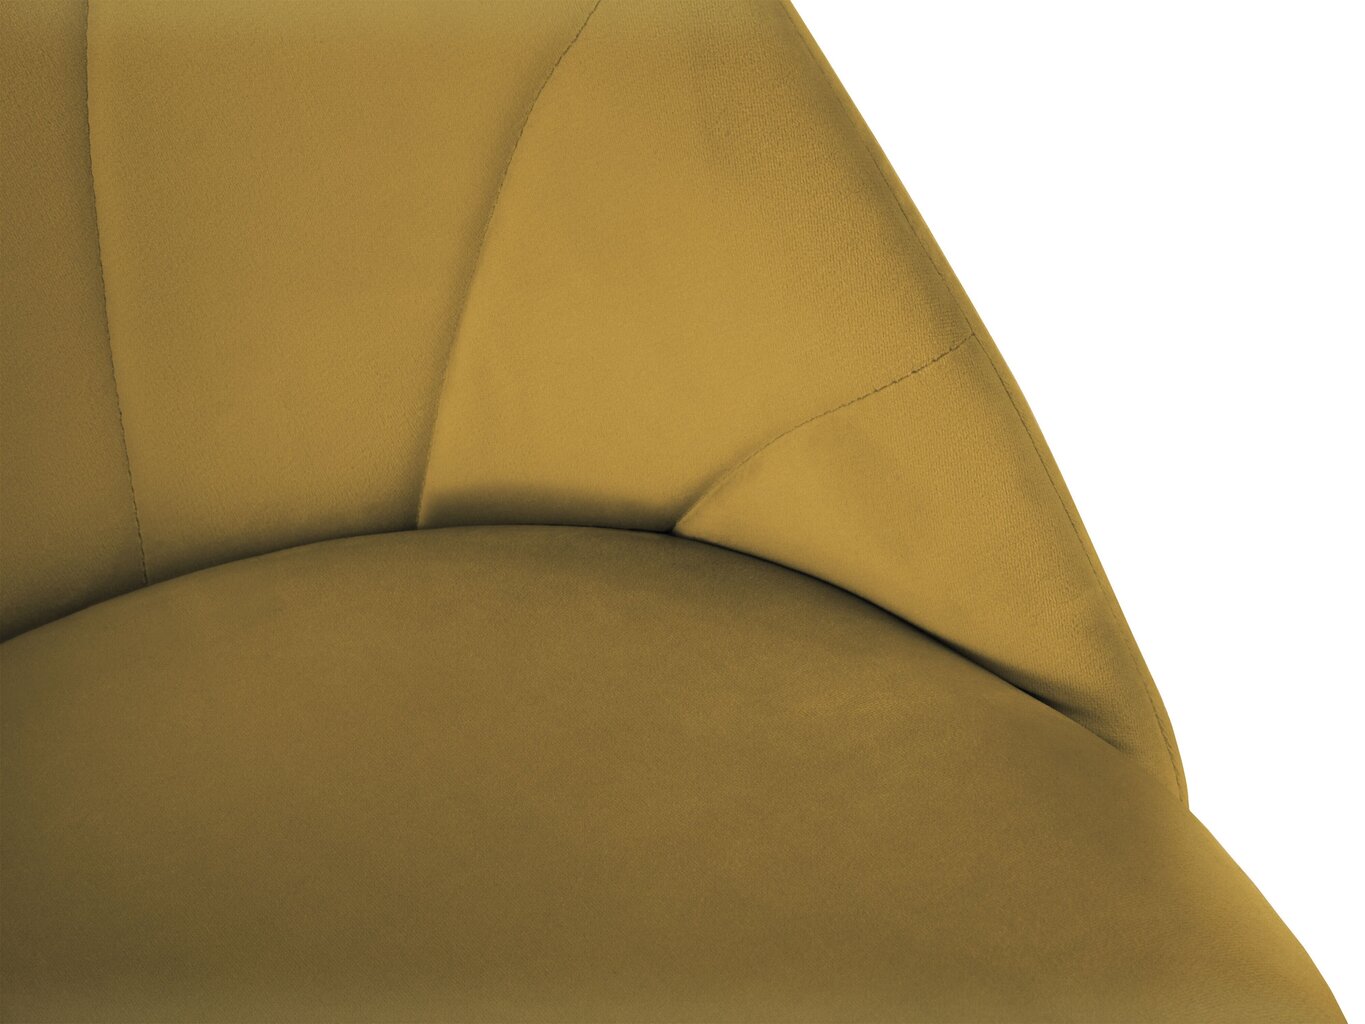 2-u krēslu komplekts Milo Casa Livia, dzeltens цена и информация | Virtuves un ēdamistabas krēsli | 220.lv